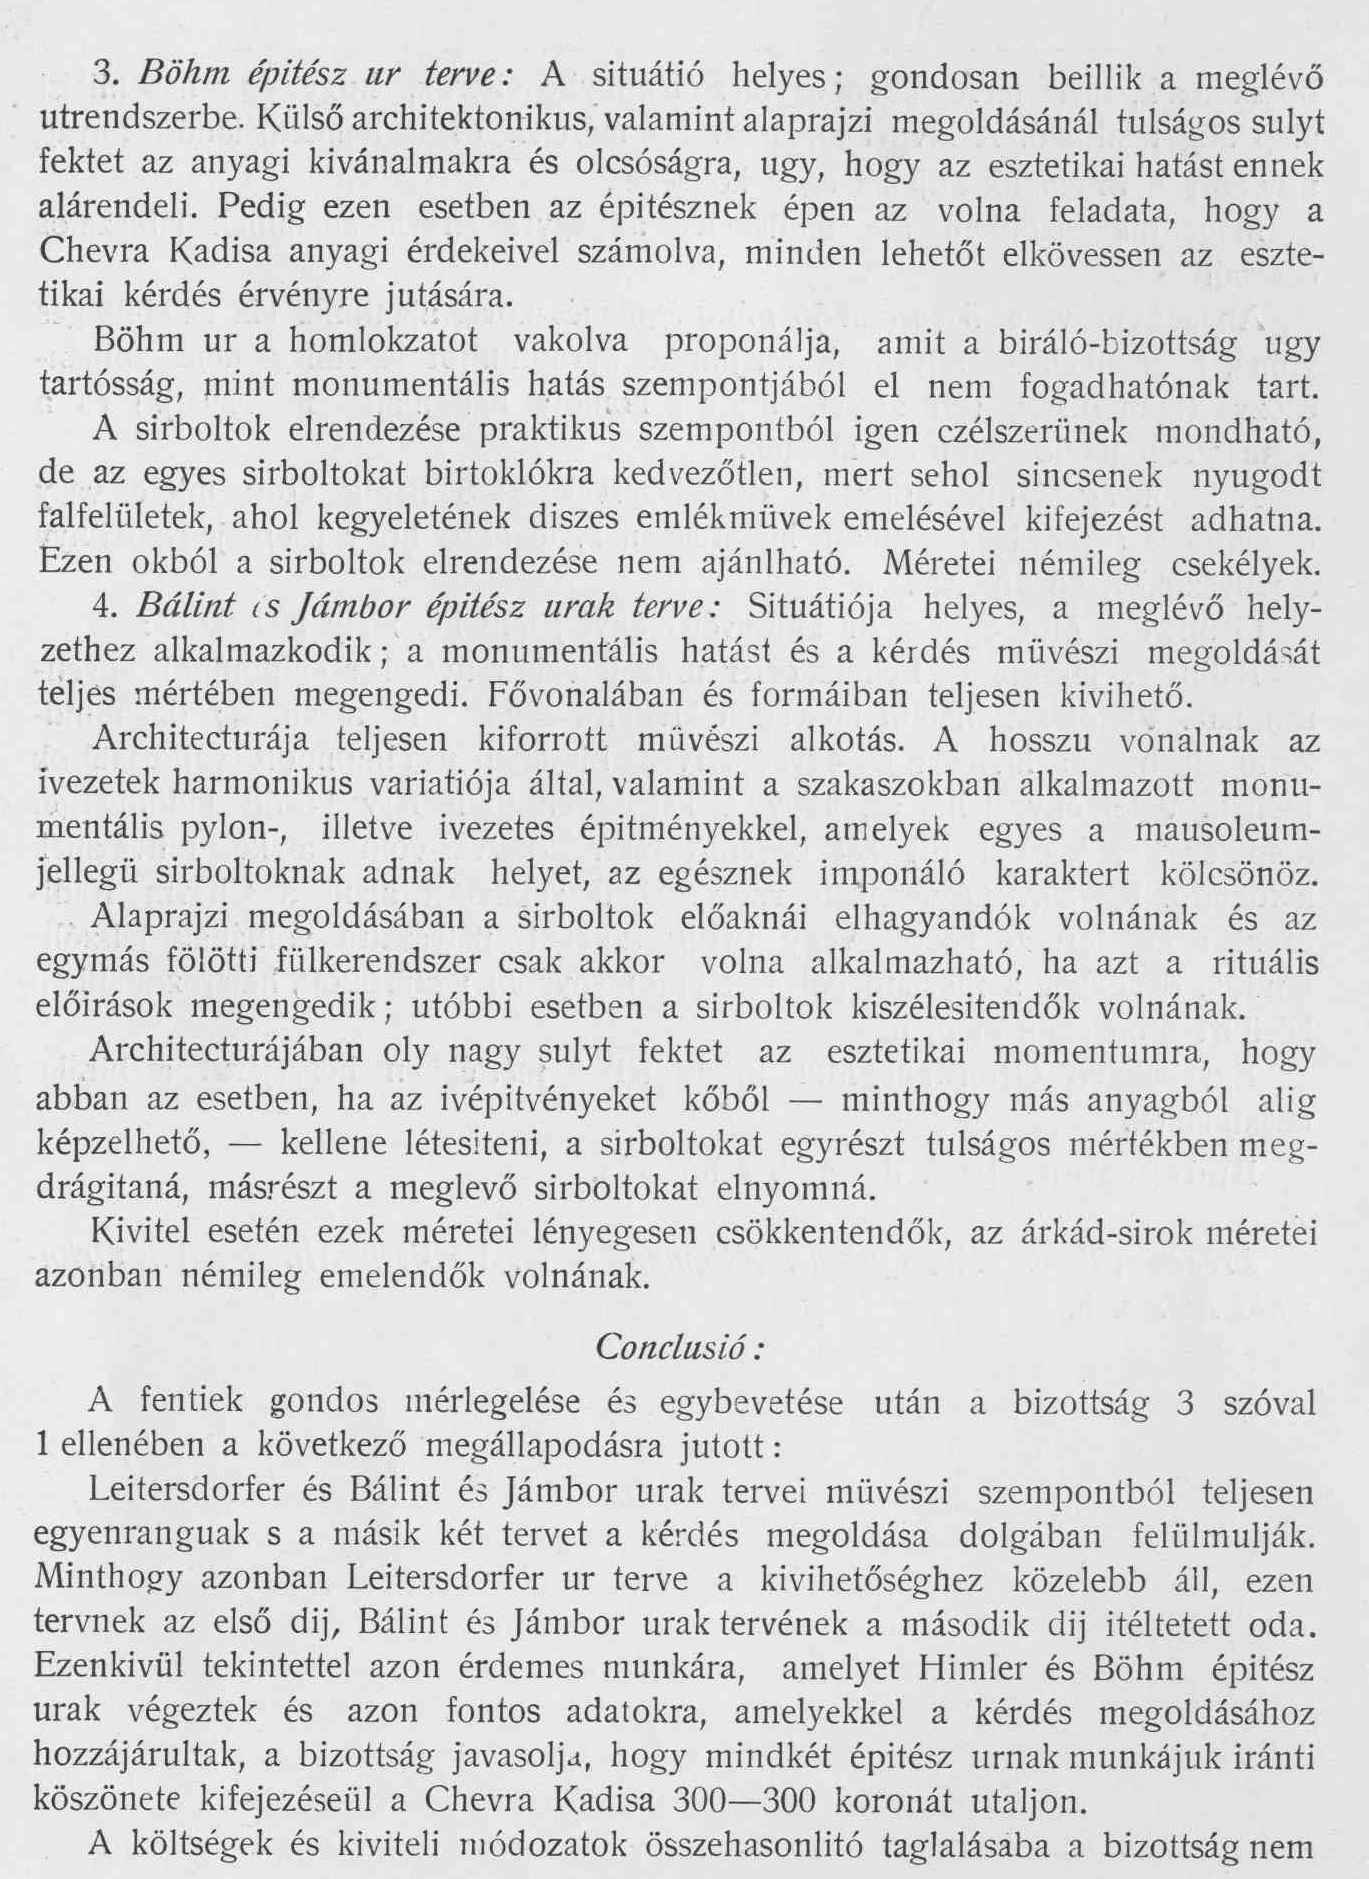 Magyar Pályázatok, 1903/12. 15. p.